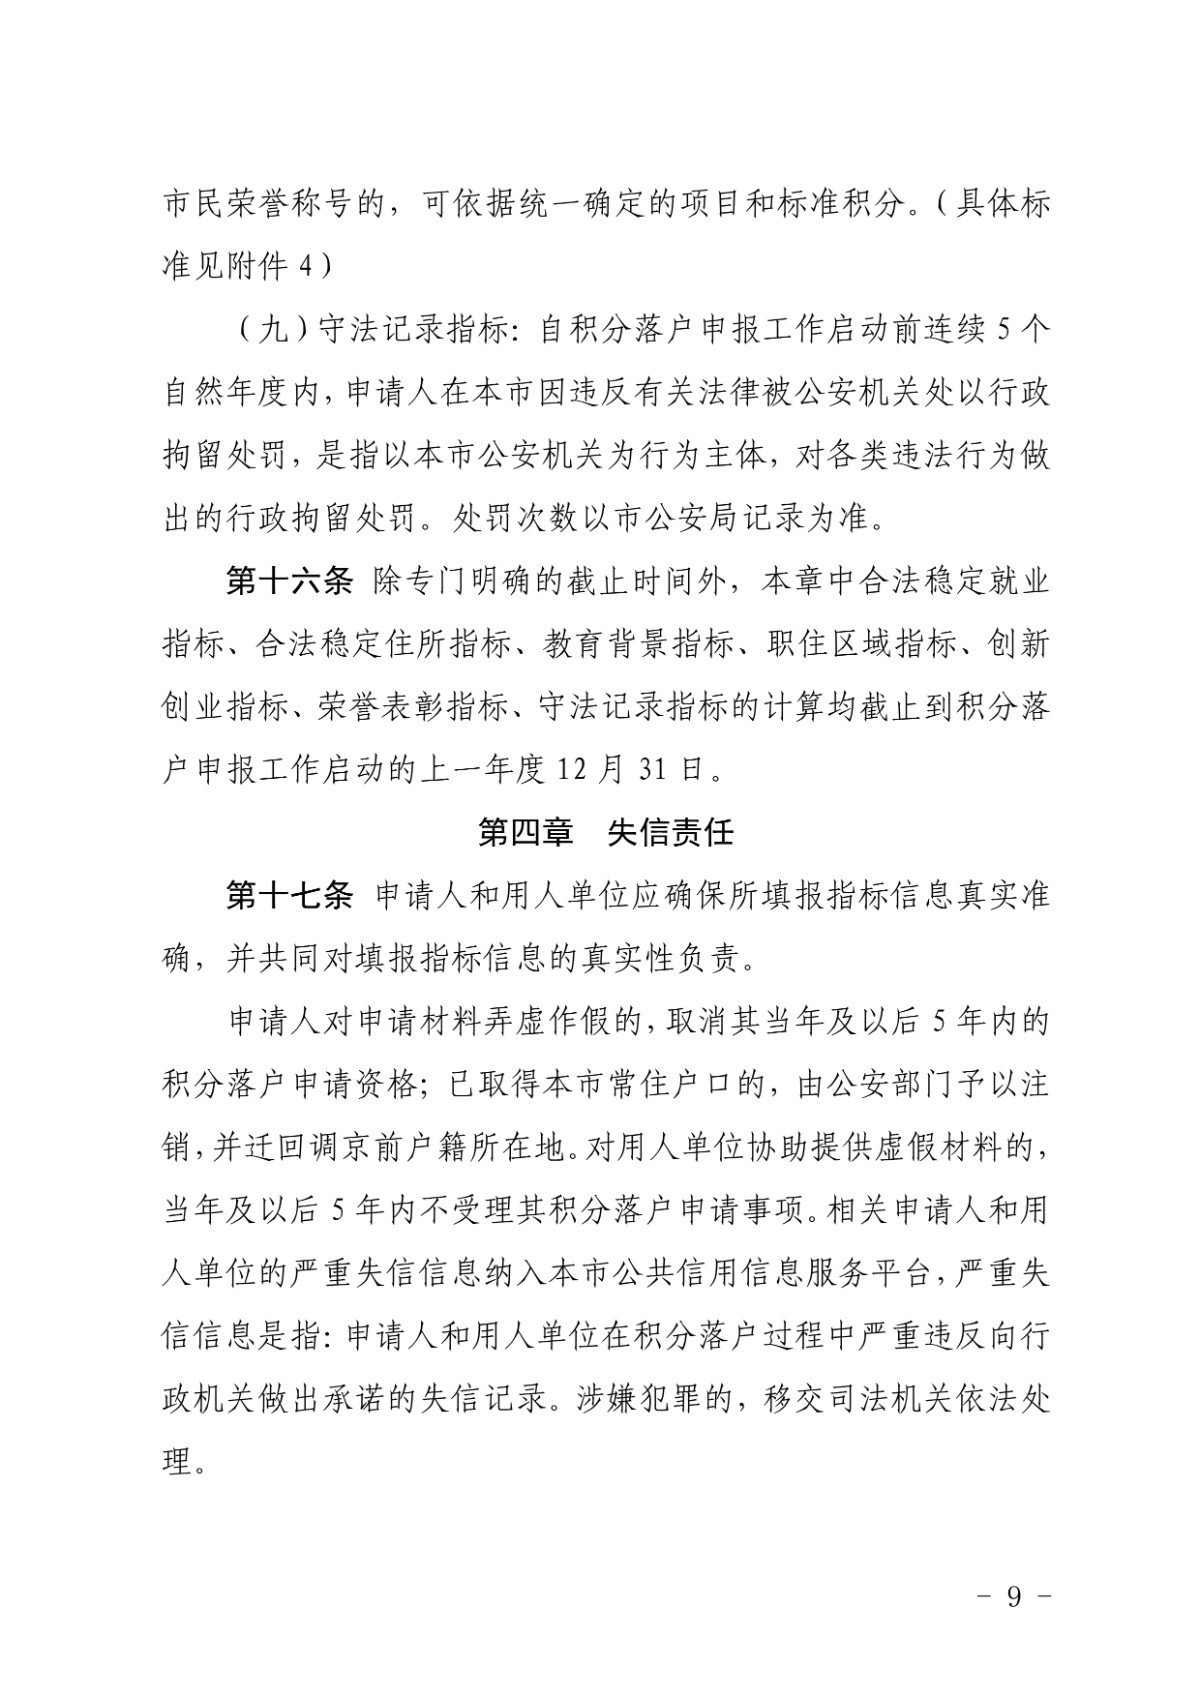 北京新版積分落戶政策徵求意見稿全文-中國網地産